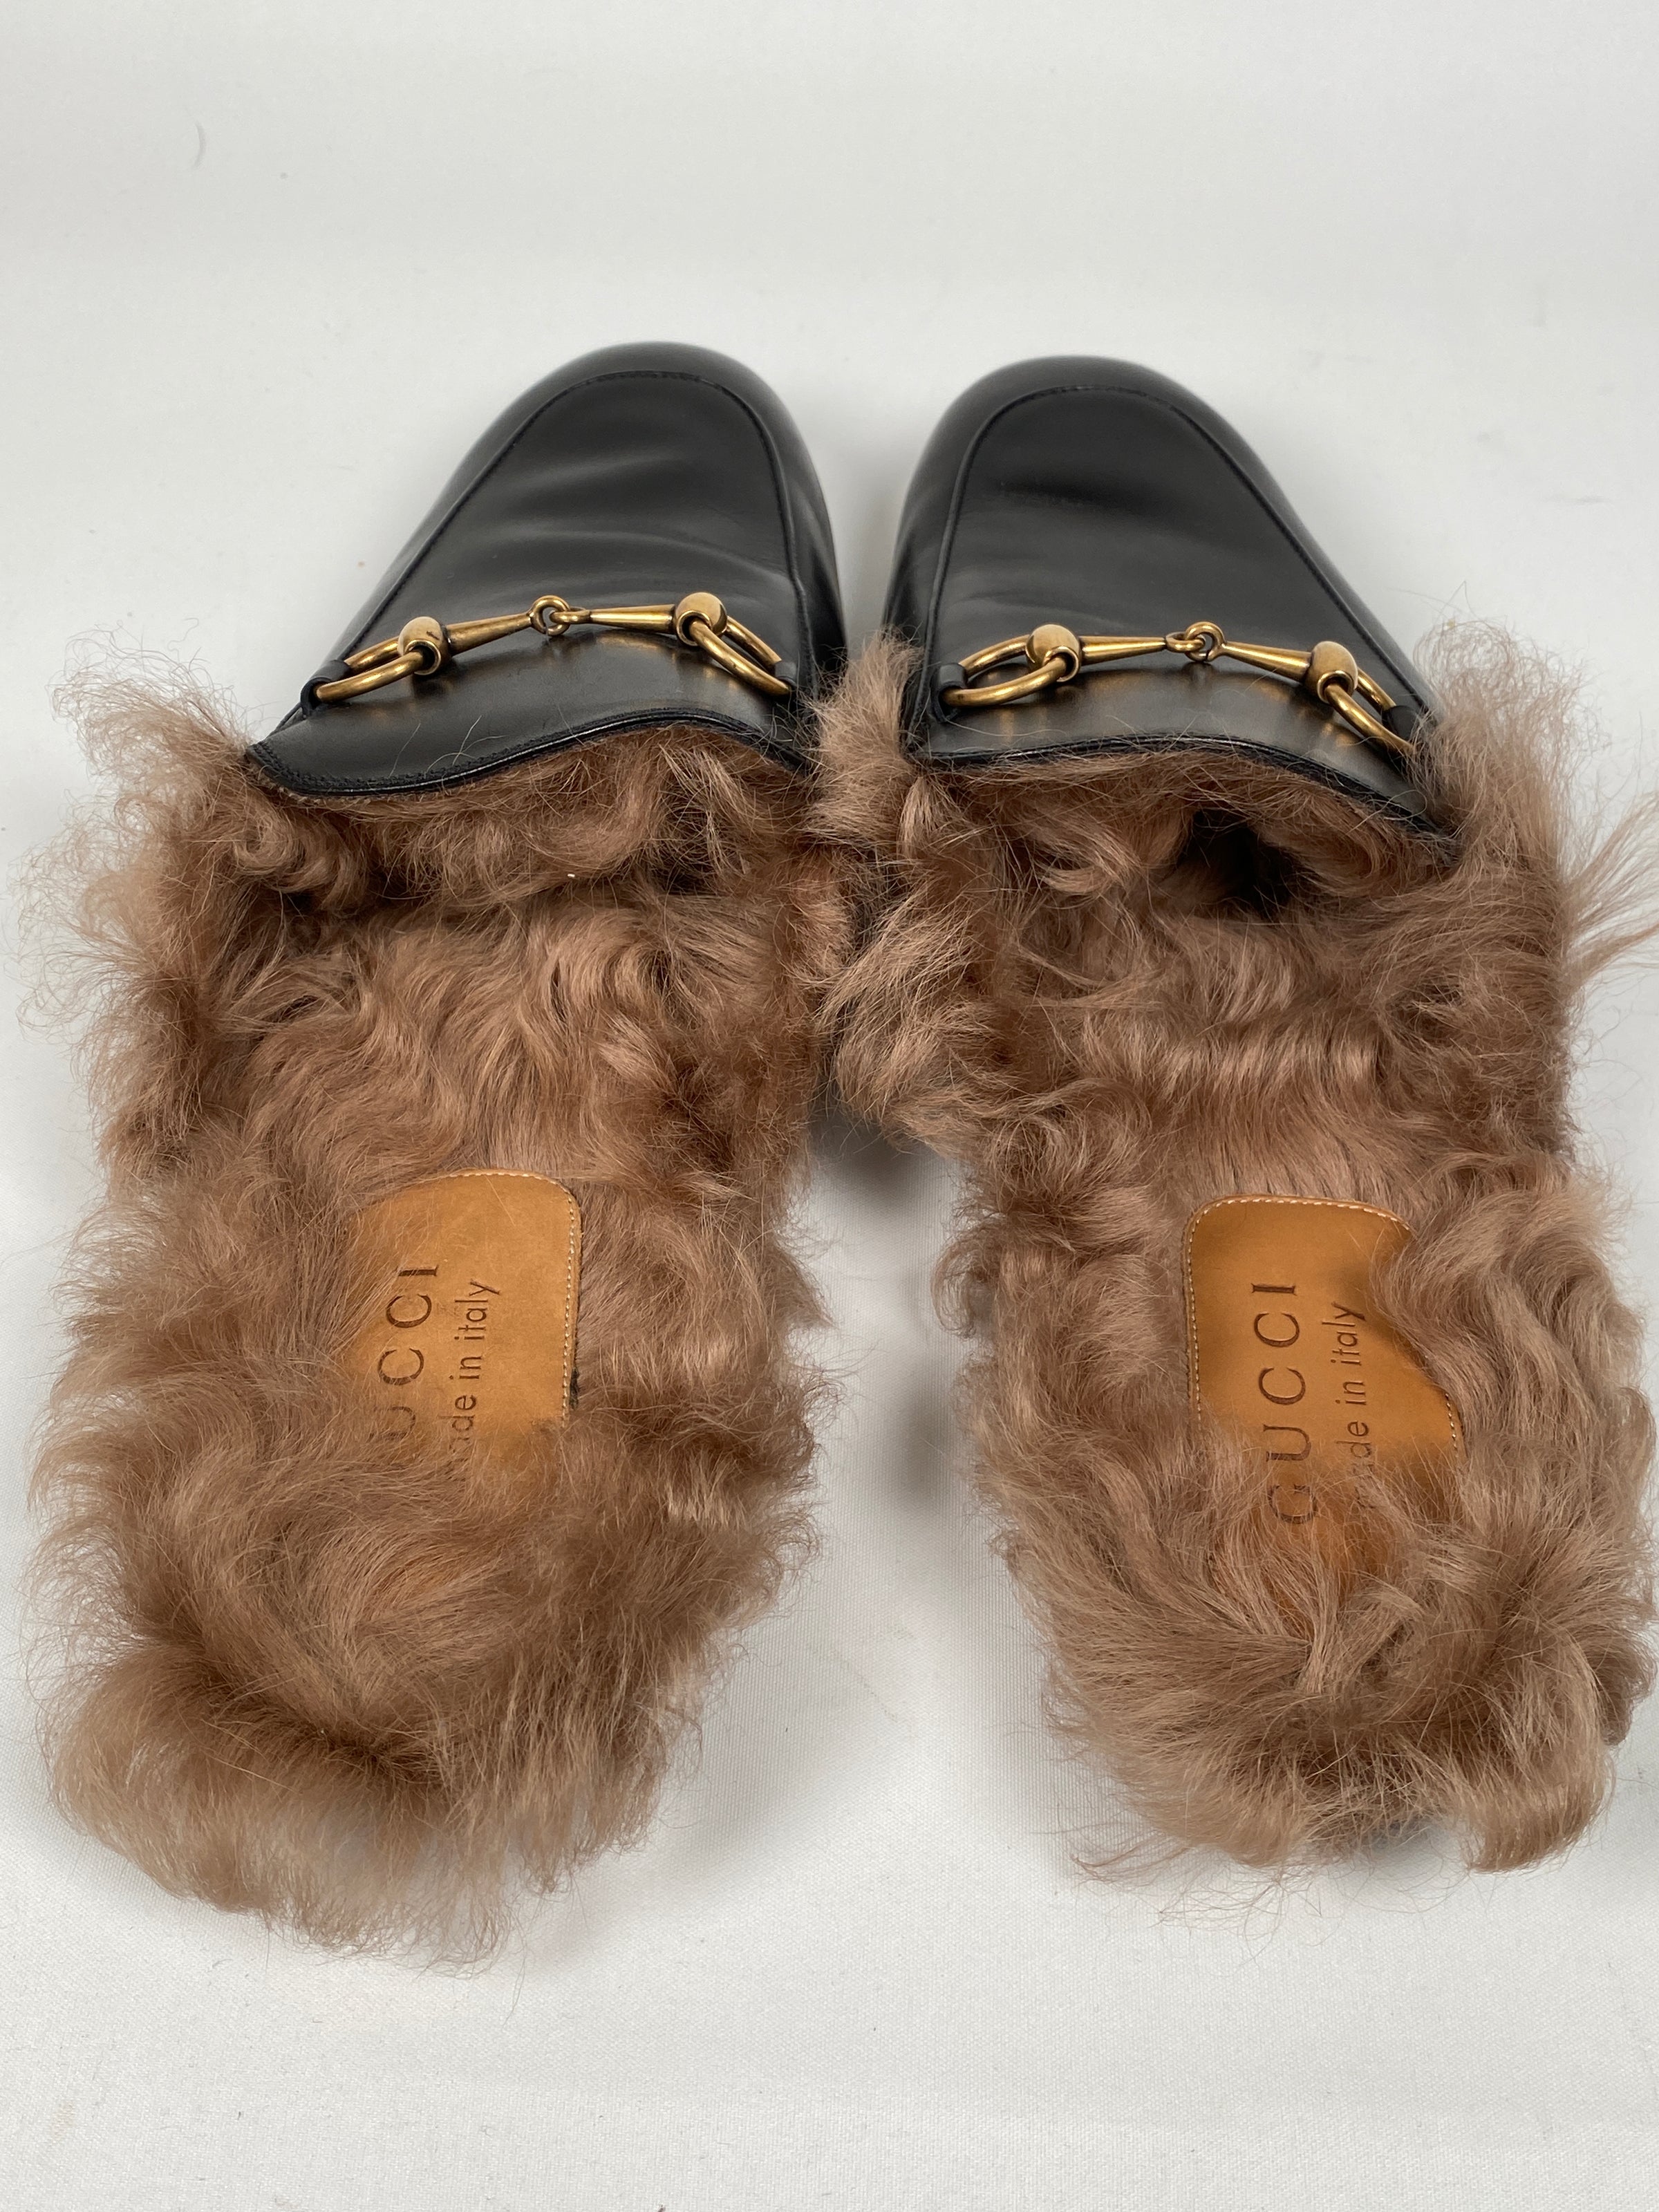 Gucci Men's Sandals - Authenticated Resale